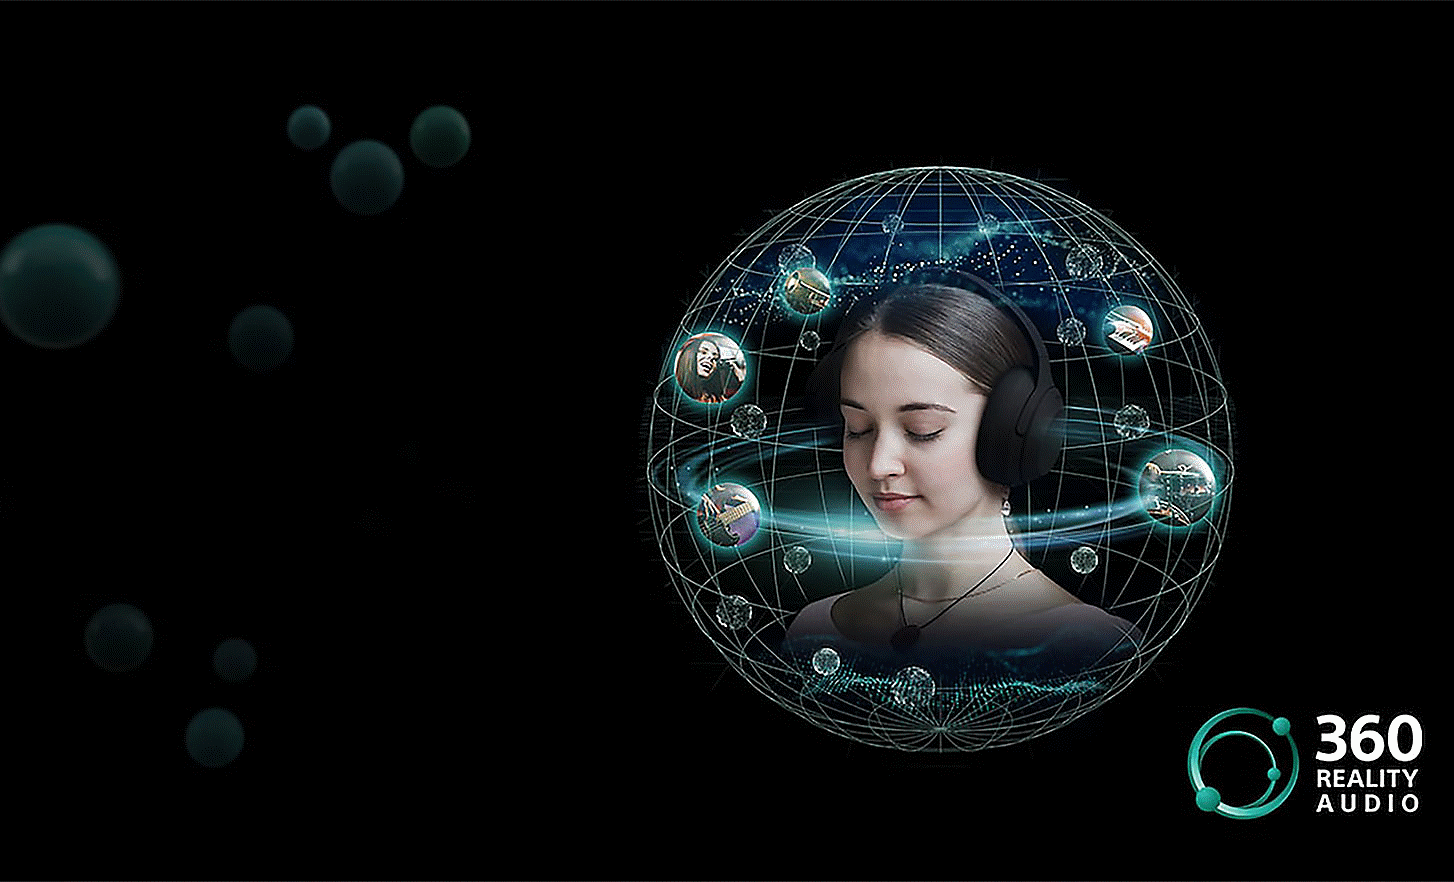 Imagen de una persona que usa audífonos rodeada de burbujas de sonido en una red circular y el logotipo de 360 Reality Audio a la derecha